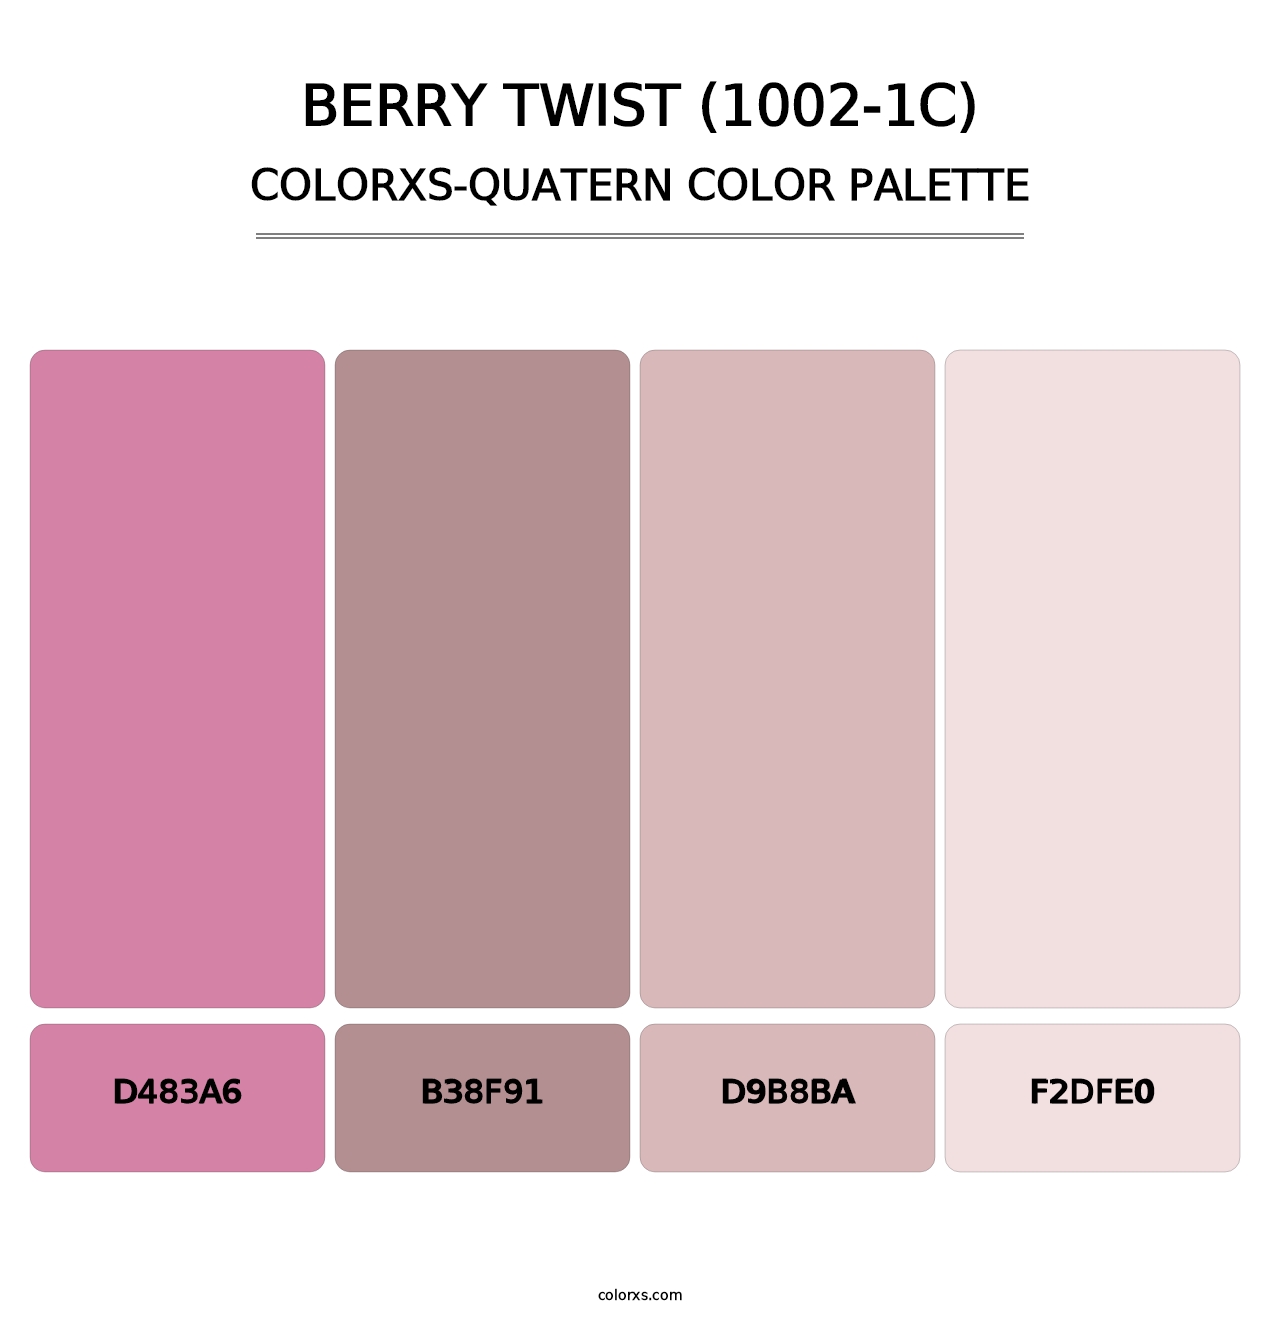 Berry Twist (1002-1C) - Colorxs Quatern Palette